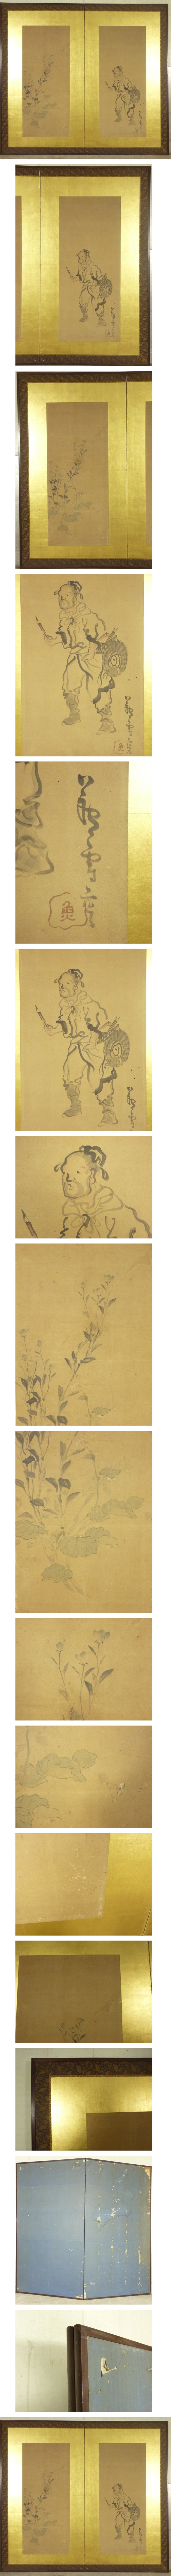 数量限定安い長澤廬雪(長沢芦雪) 筆 花と人物図 二枚折 屏風 高さ 約170.5㎝ 紙本肉筆 水墨画 人物、菩薩